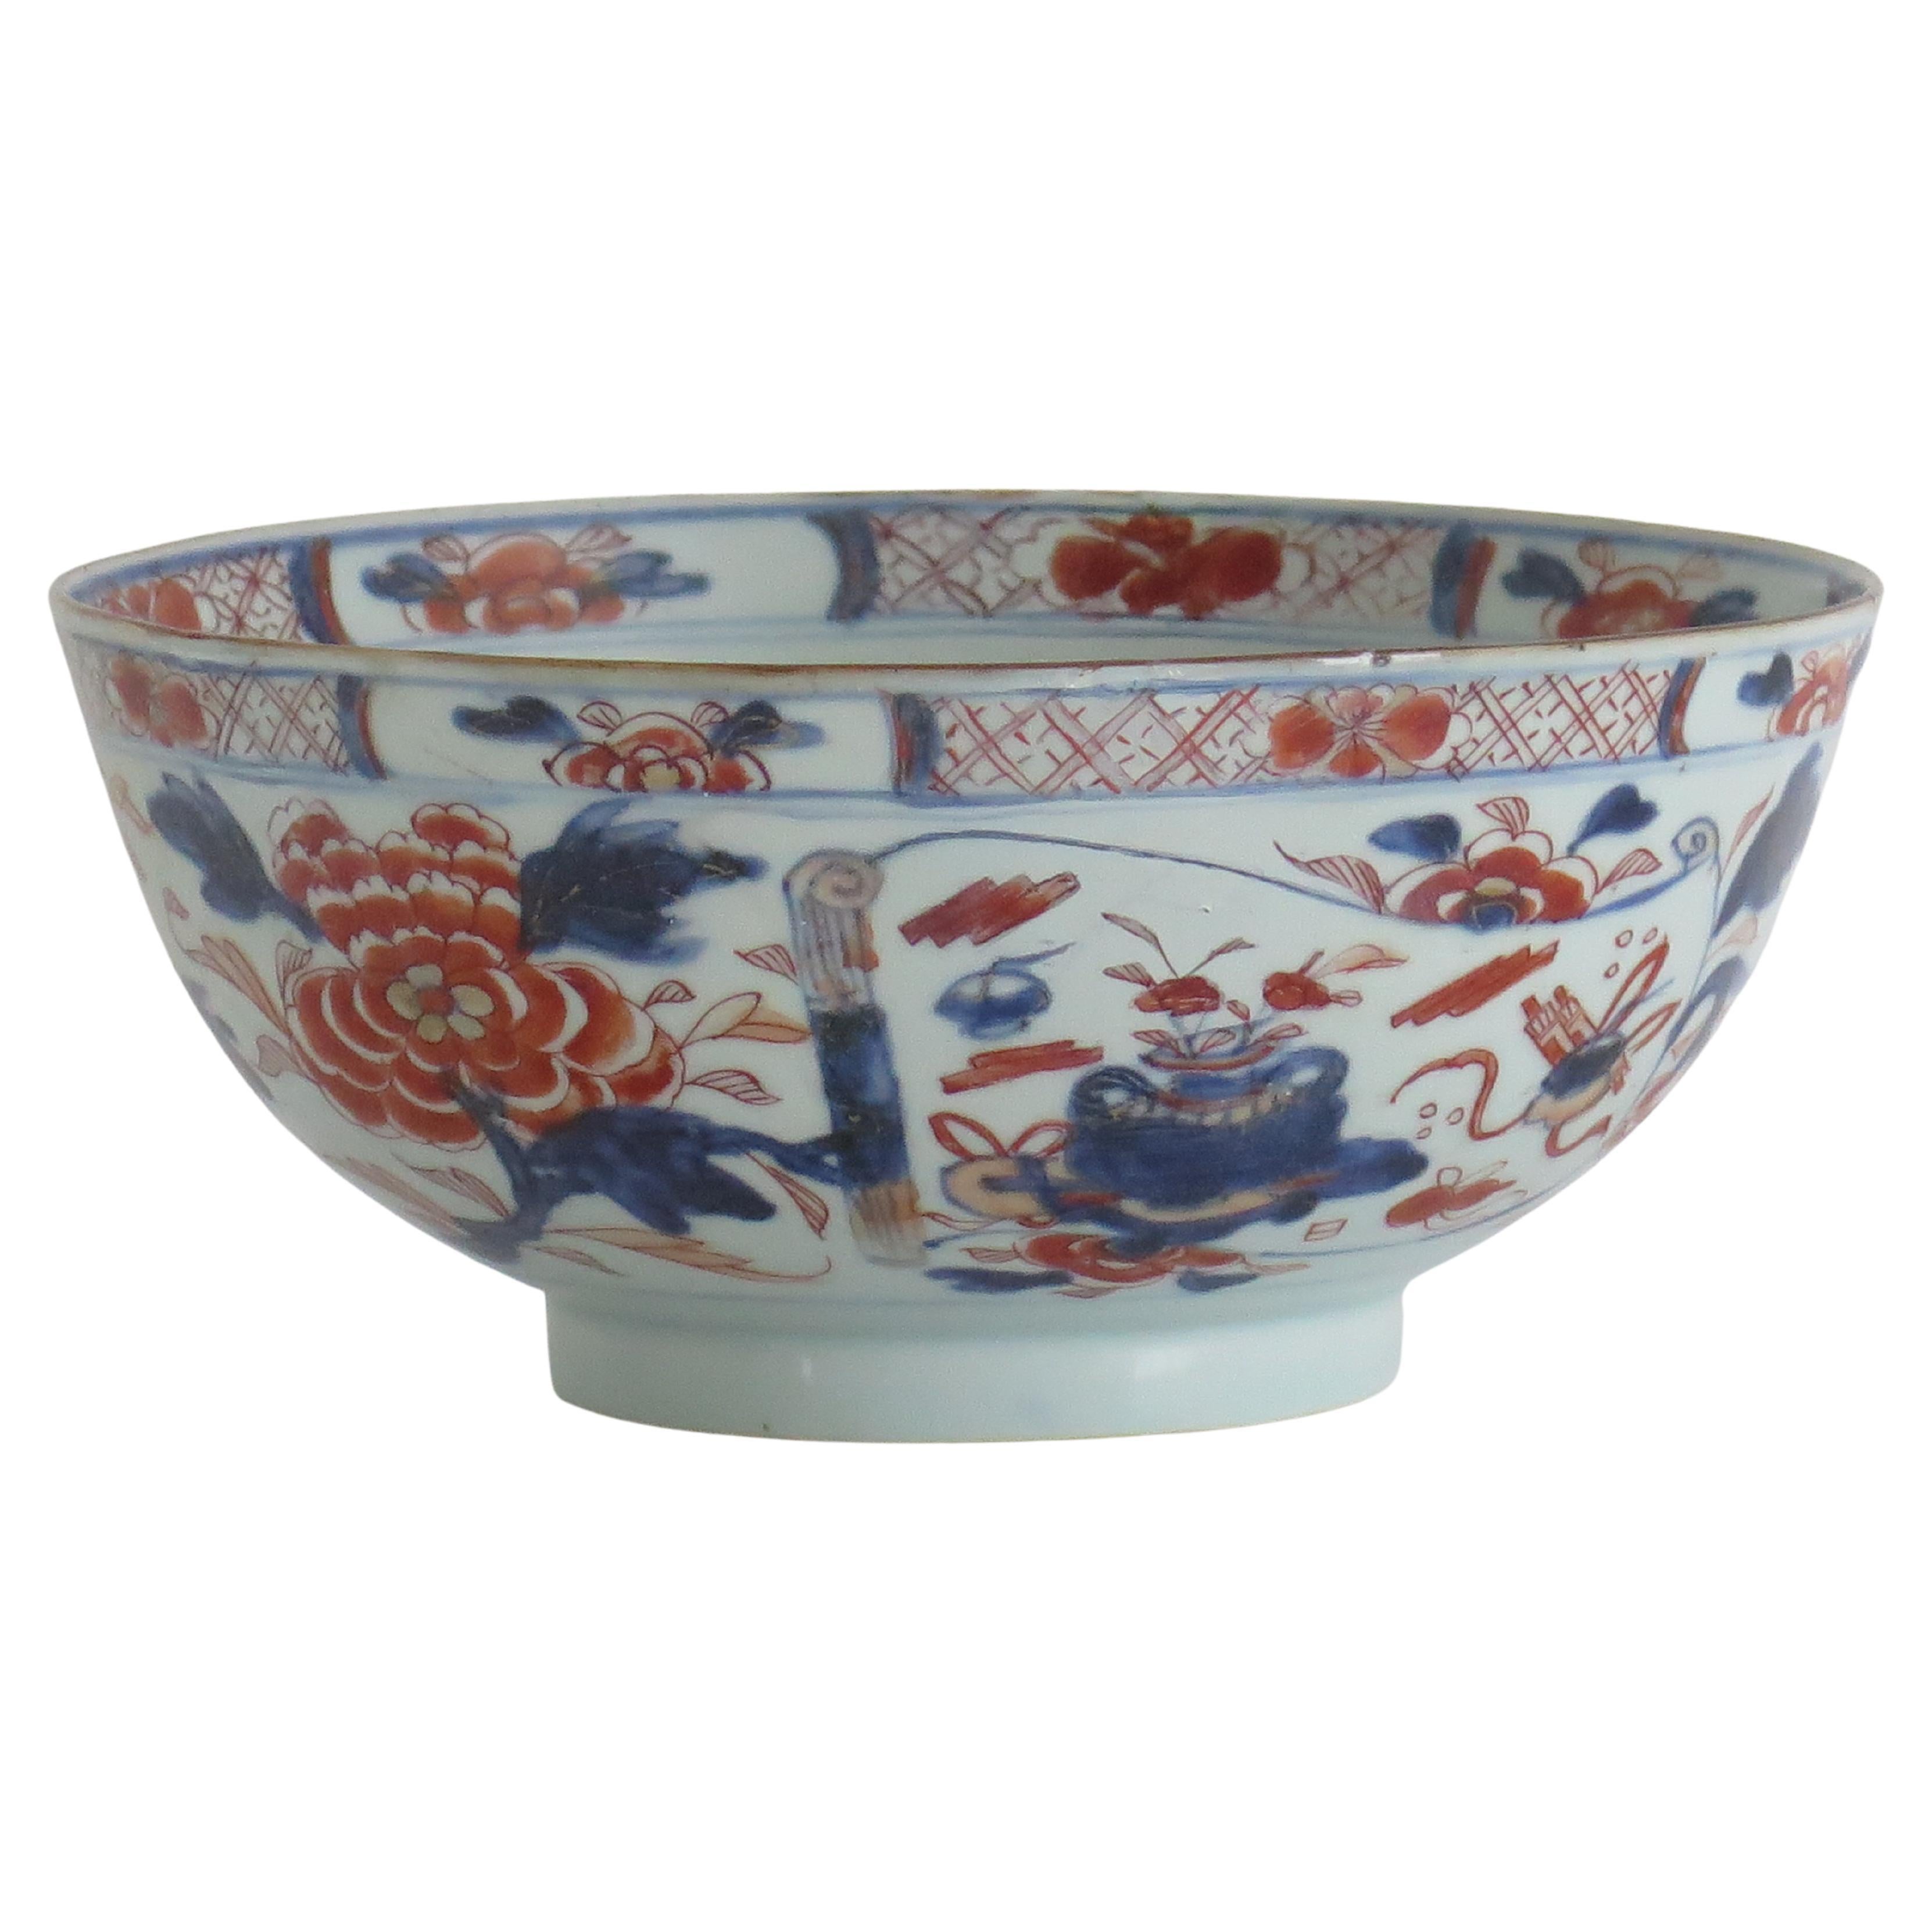 18thC. Bol en porcelaine d'exportation chinoise Imari peint à la main de 9 pouces de diamètre Qing vers 1730